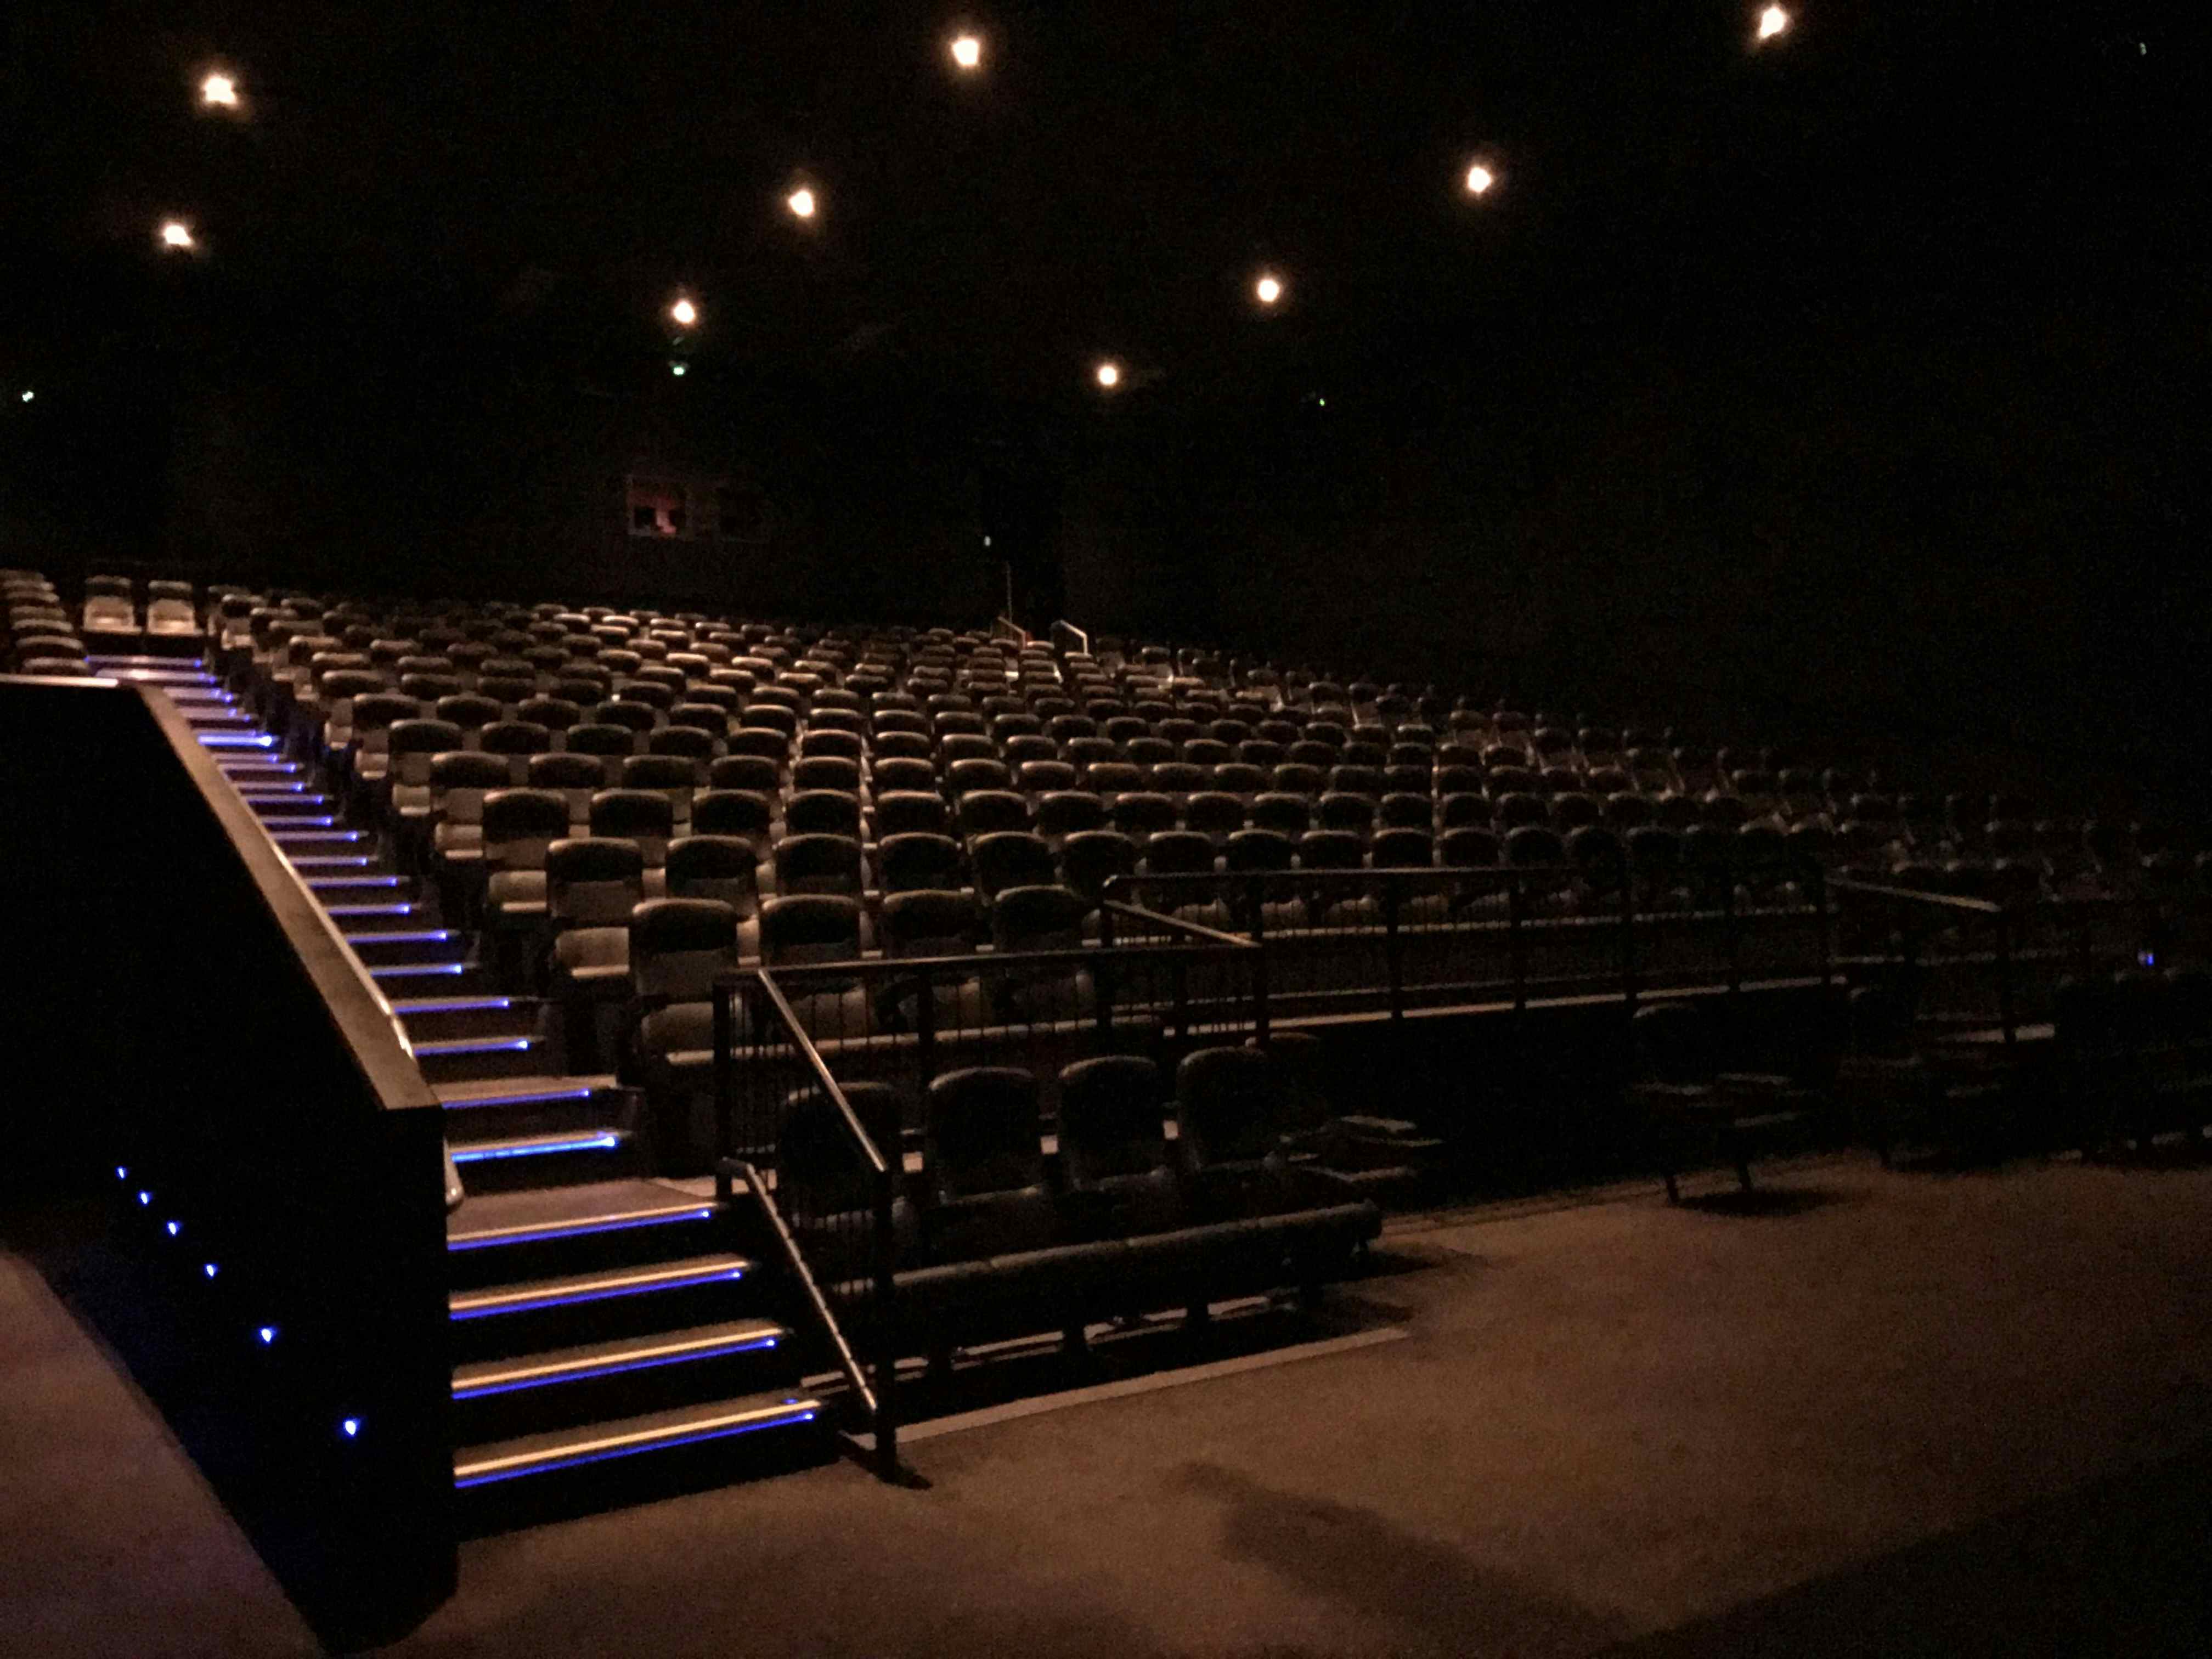 Large Screens, Vue Cinema London - Westfield Stratford